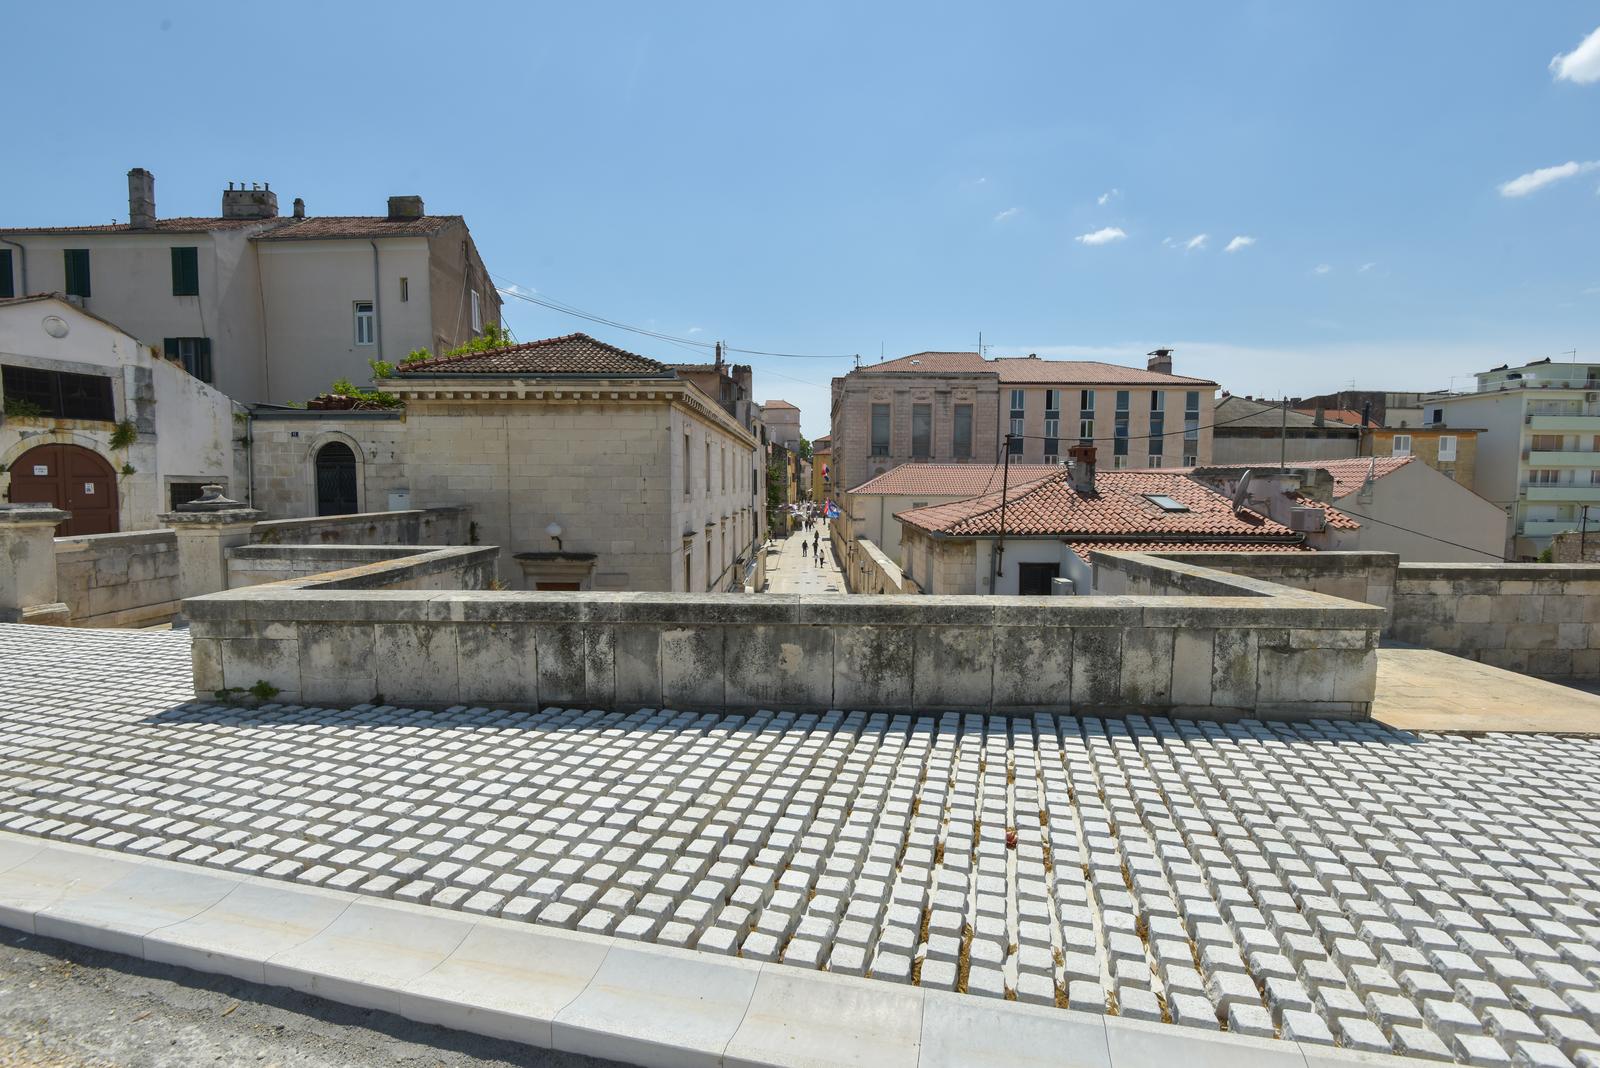 29.05.2020., Zadar - Projekt rekonstrukcije gradskih zidina ulazi u zavrsnu fazu. Postavljeni su kameni plocnik i zastitna ograda na koju se apeliralo zbog nekoliko slucajeva padanja turista proteklih godina. rPhoto: Dino Stanin/PIXSELL